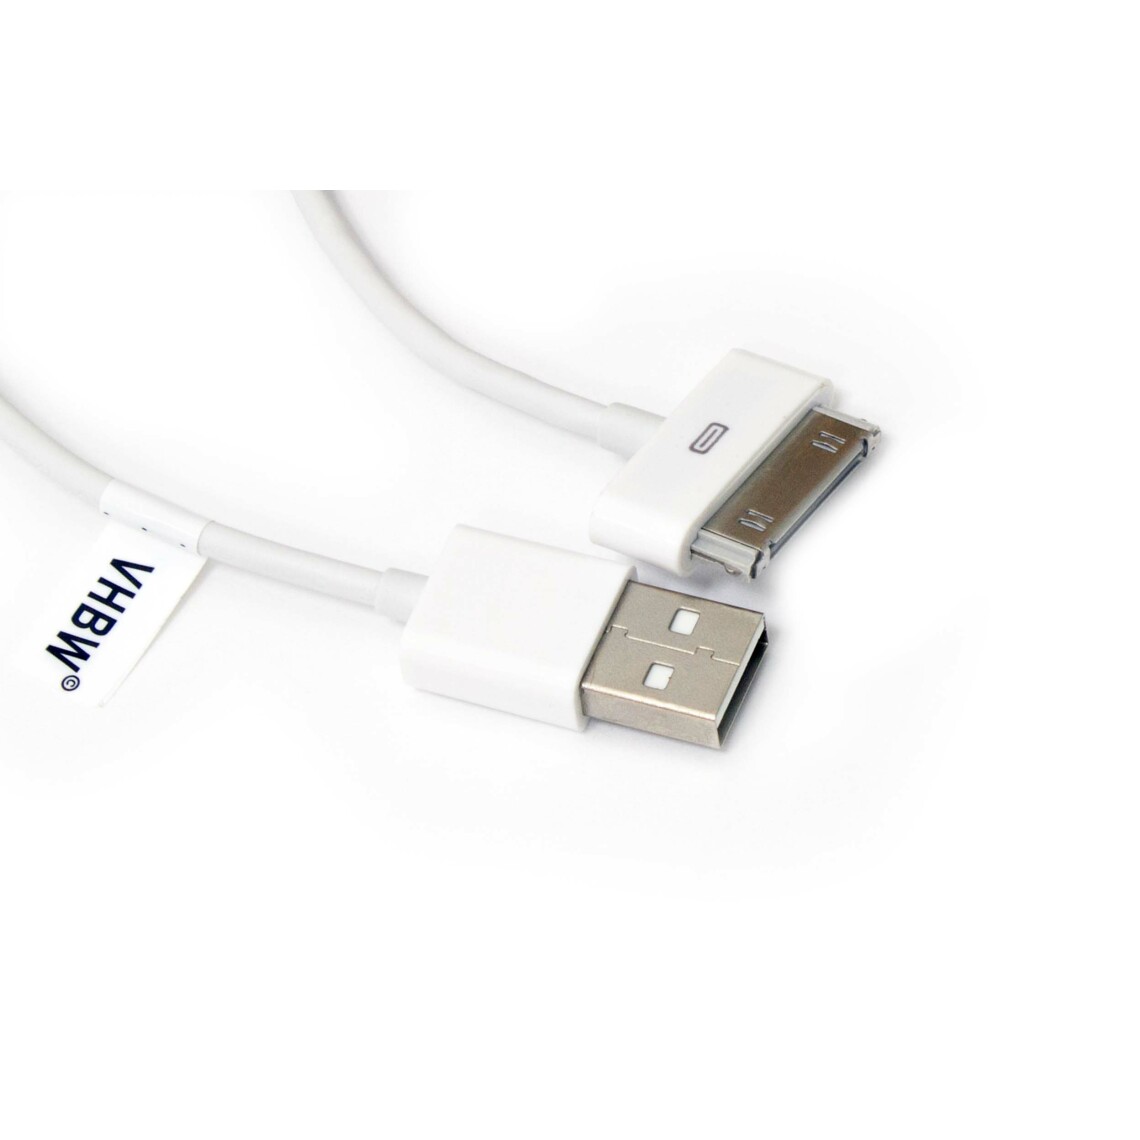 Vhbw - vhbw câble de données USB (type A sur iPod) compatible avec Apple iPod Touch 1 Gen. - A1213, Touch 2 Gen. - A1288 lecteur MP3 - blanc - Alimentation modulaire